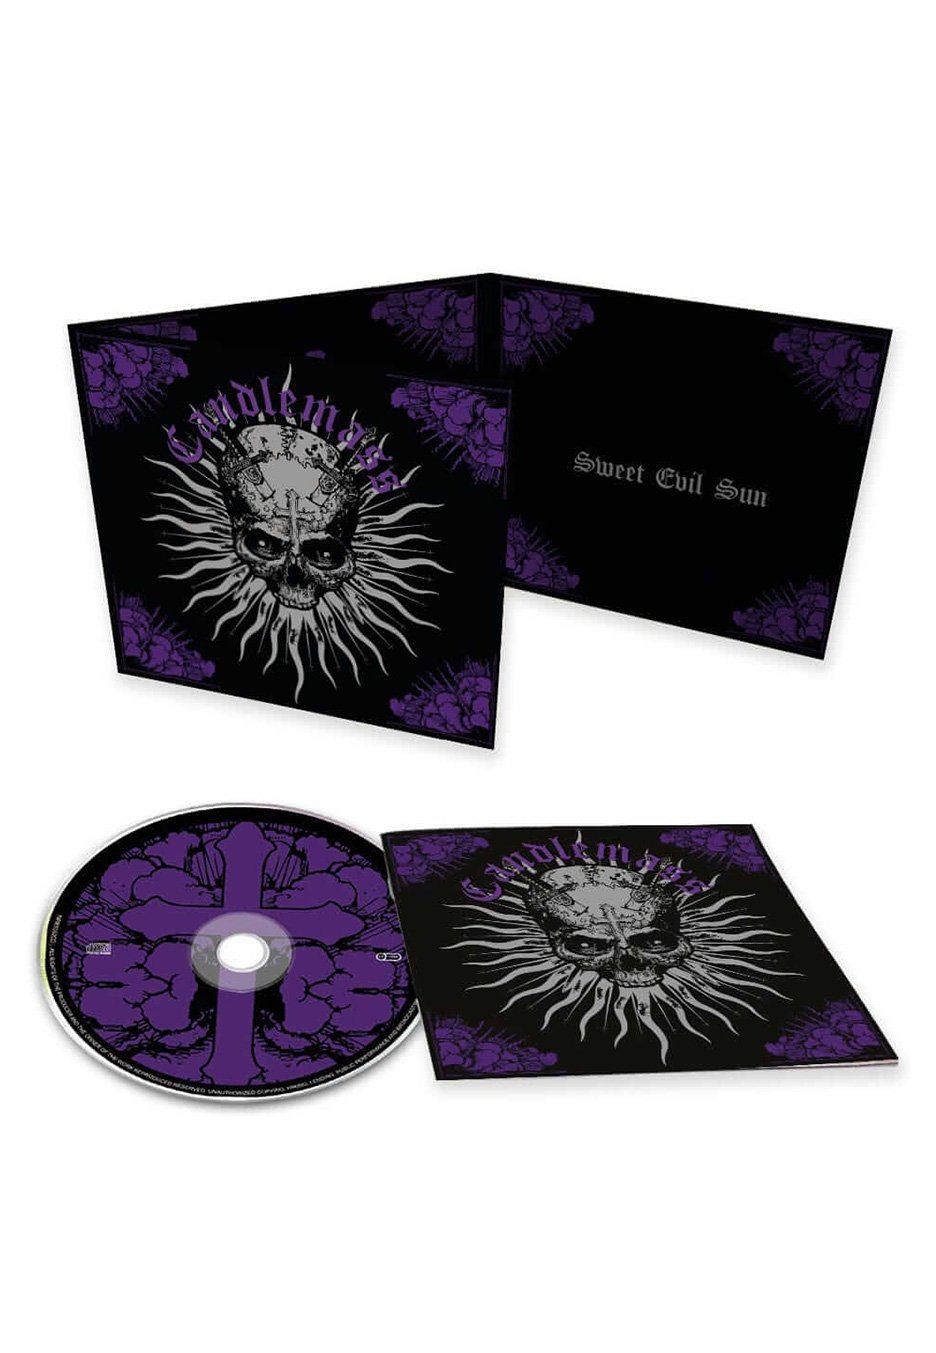 Candlemass - Sweet Evil Sun - Digipak CD